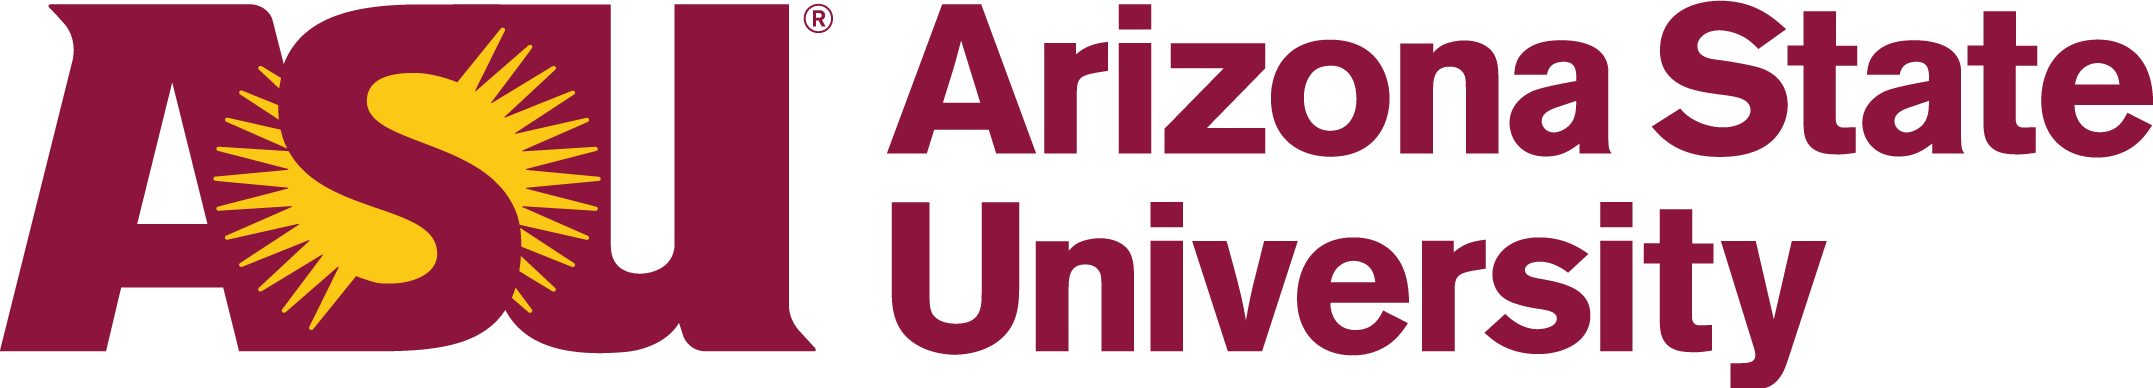 Arizona State University - iLearning Ecuador